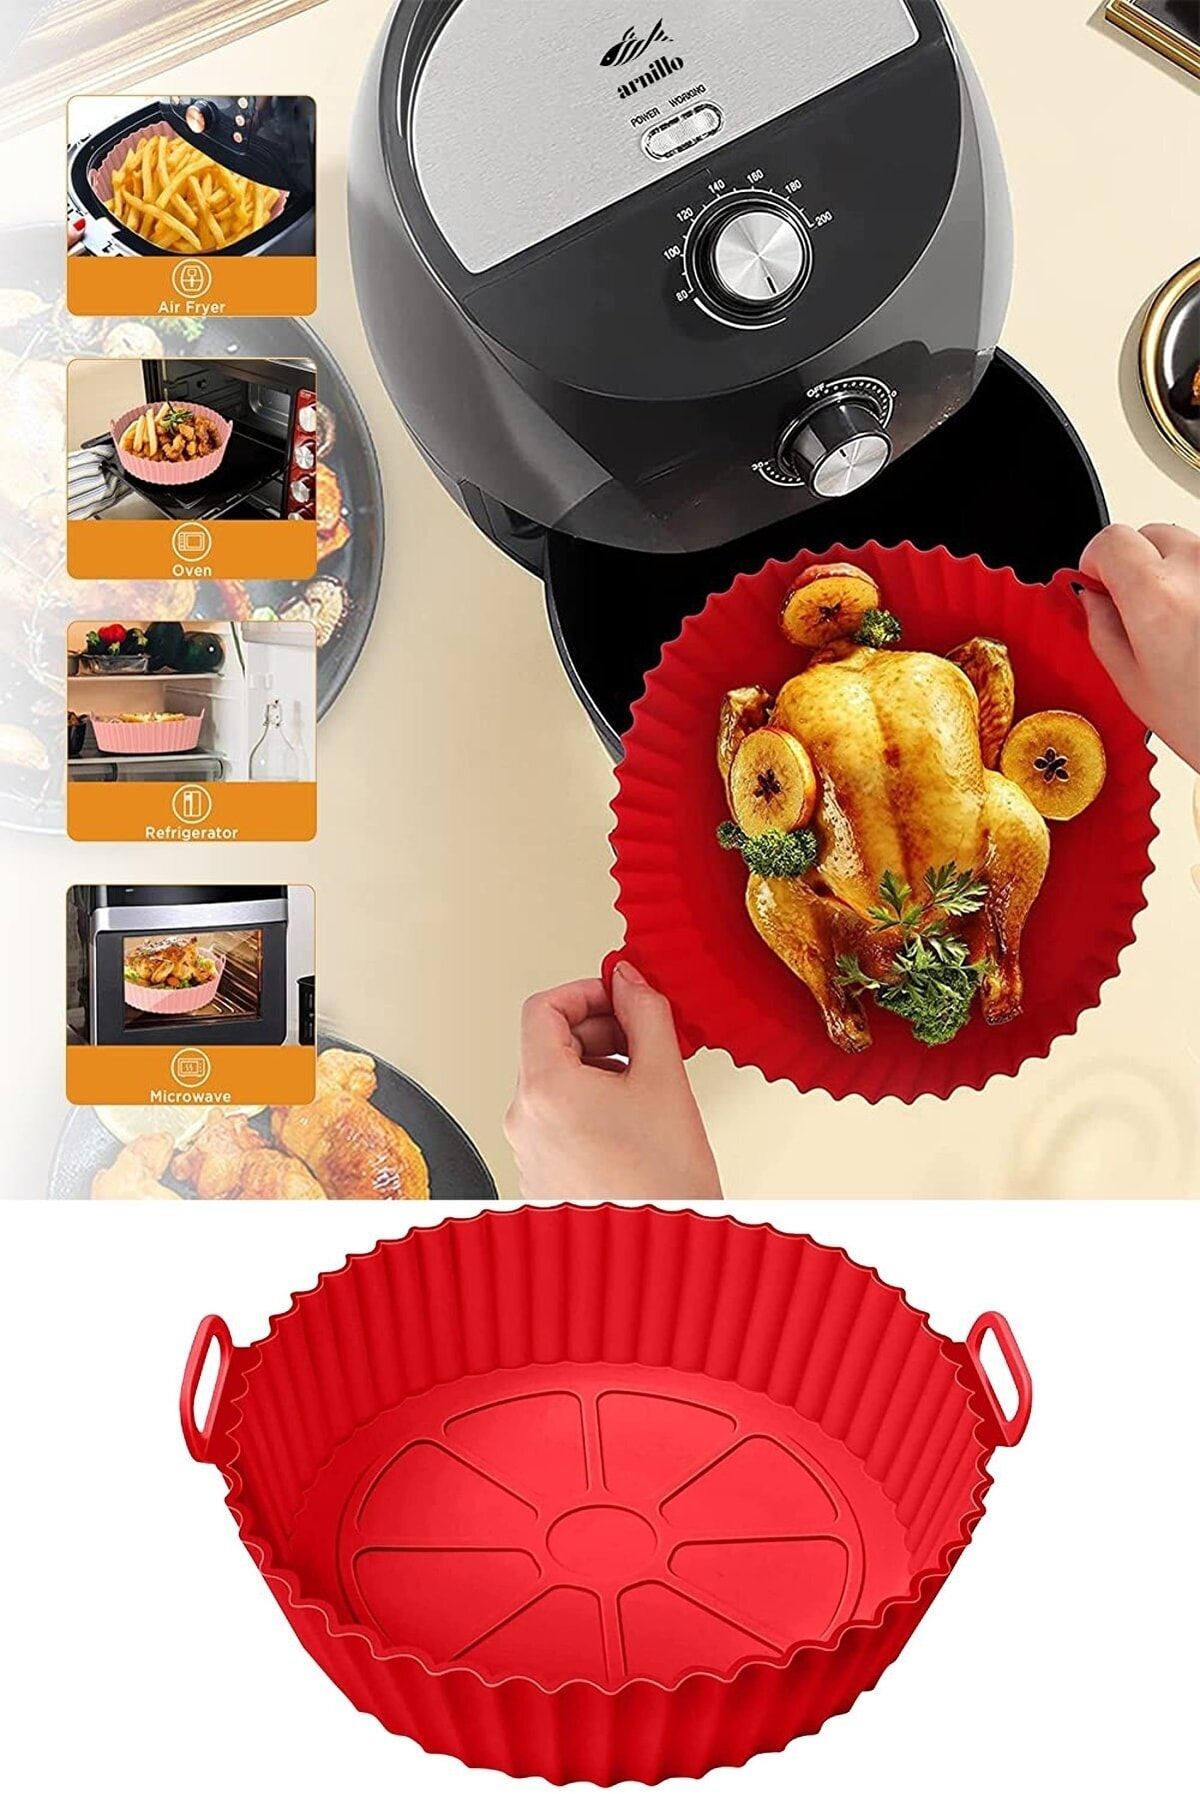 İLİVA Airfryer Silikon Pişirme Kalıbı - Air Fryer Aksesuarı, Pişirme Kağıdı - Kırmızı (bpa Free)